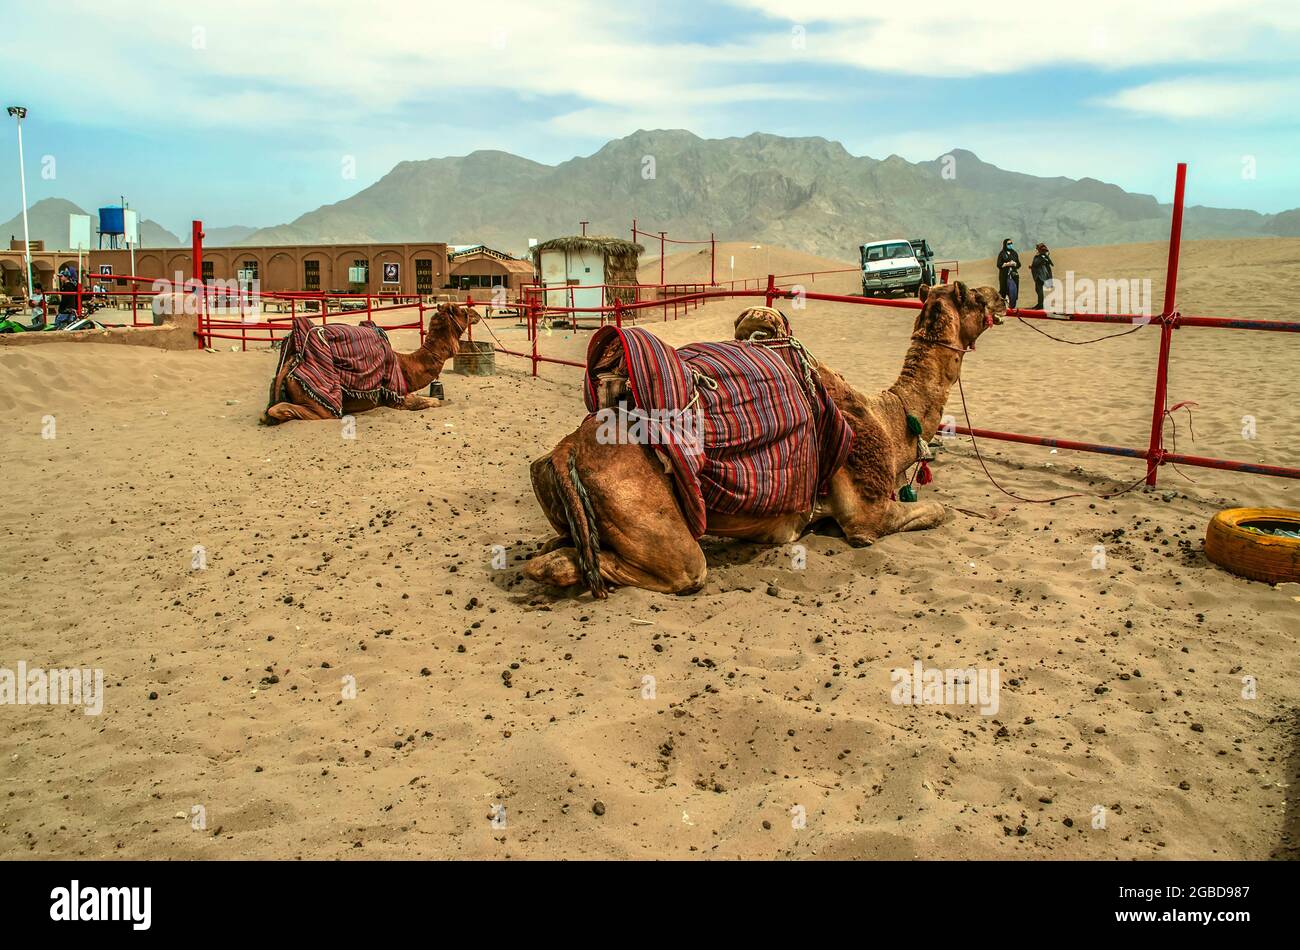 Yazd, Wüste, Iran, 20. Februar 2021: Territorium eines Safari-Entertainment-Clubs, müde Kamele liegen in einem Fahrerlager, Frauen warten auf eine Autofahrt durch die Stockfoto